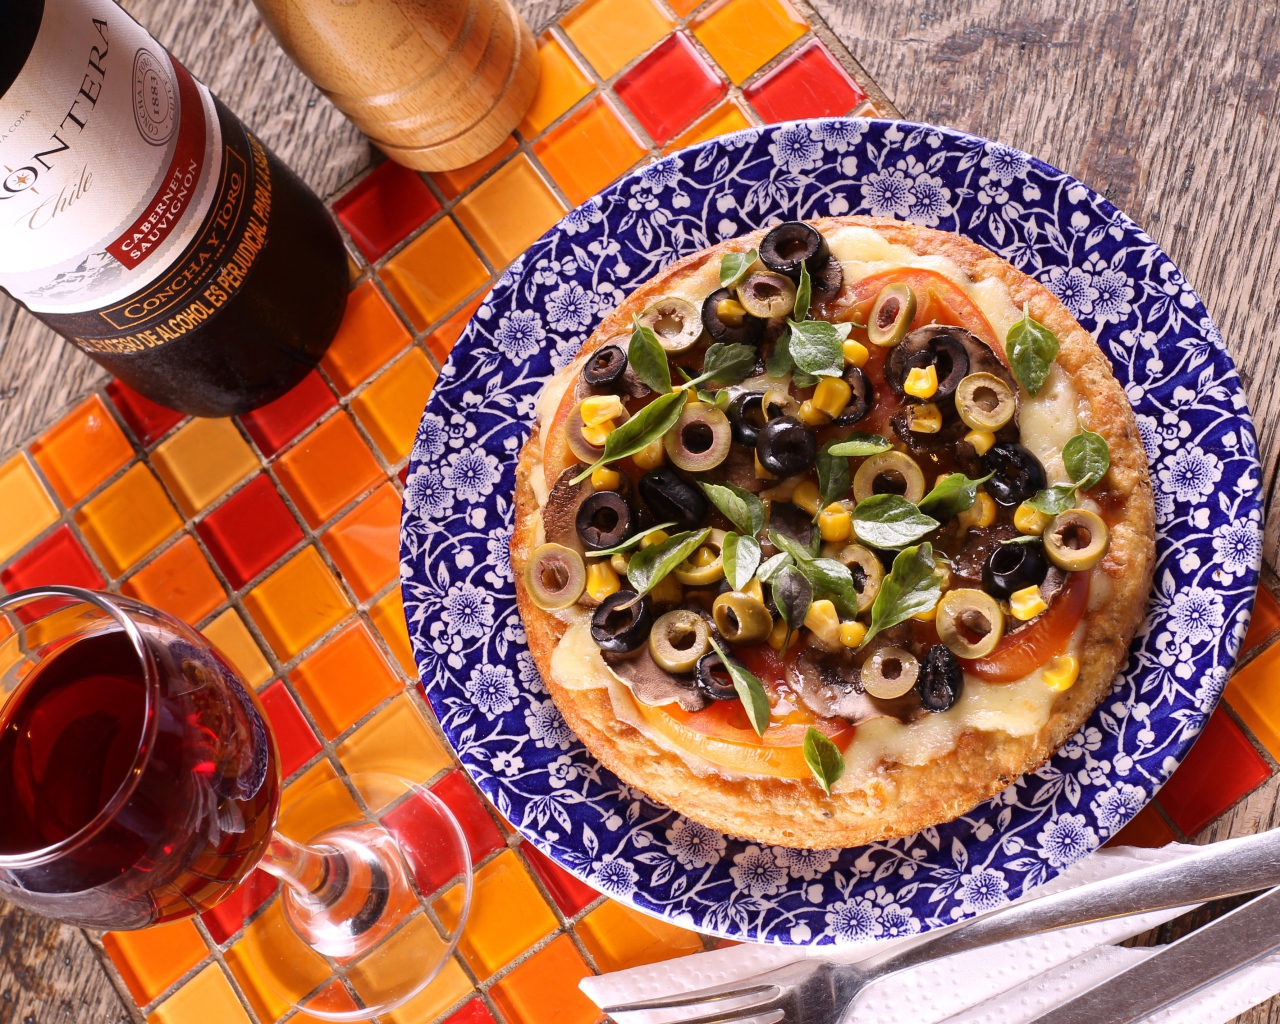 Итальянская пицца с оливками на столе с вином